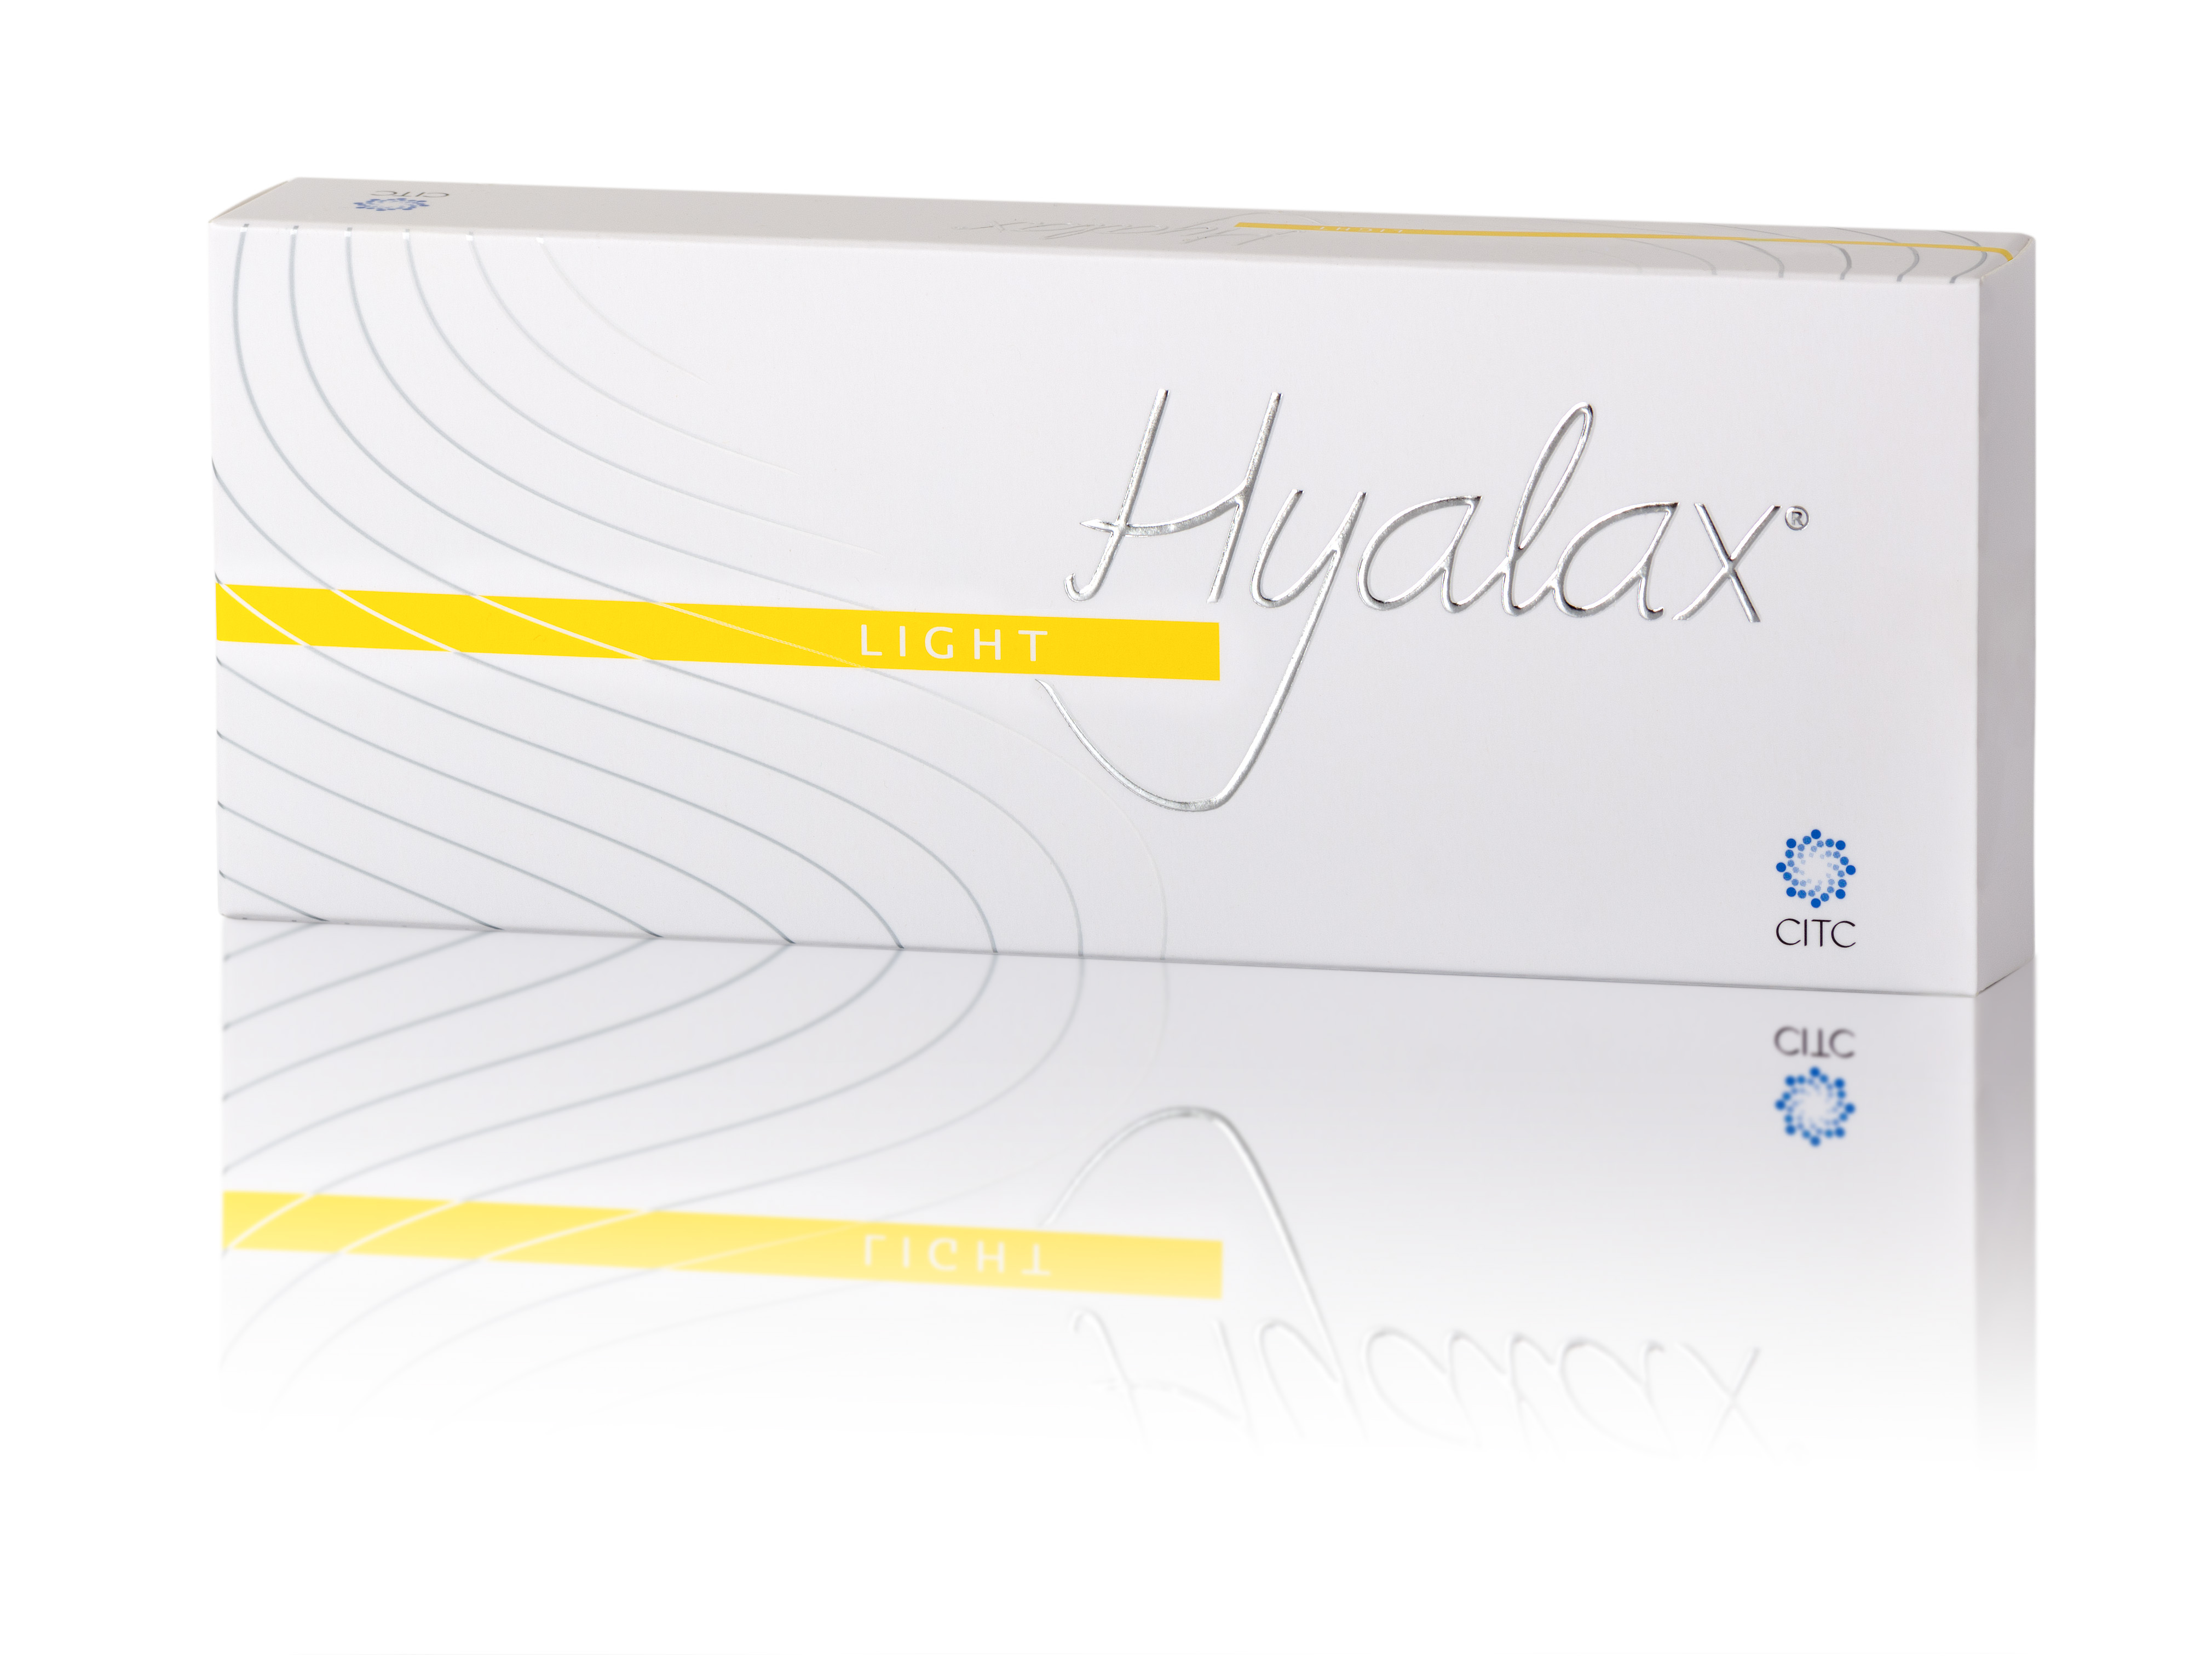 Hyalax light filler